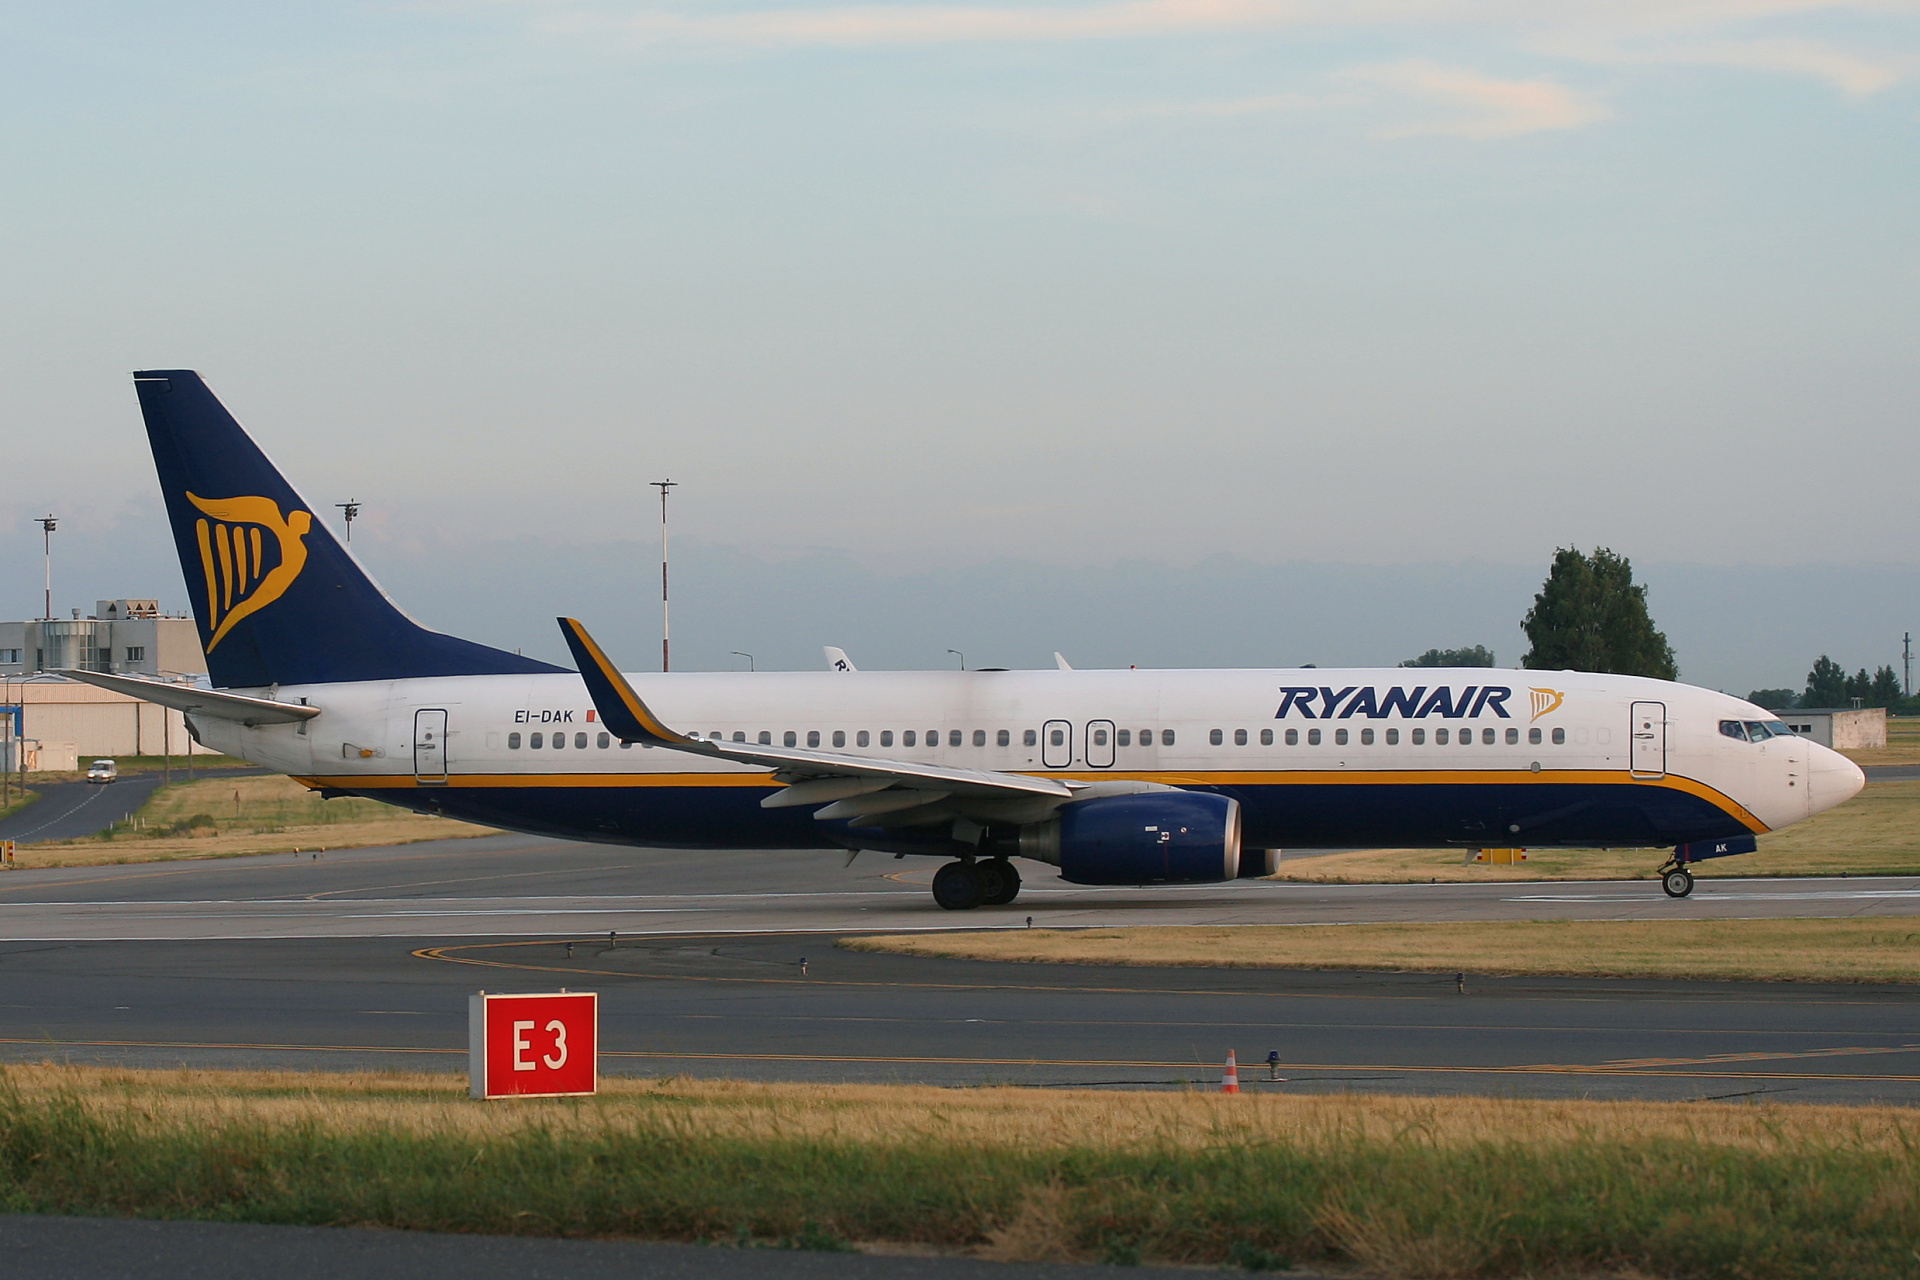 EI-DAK (Aircraft » EPWA Spotting » Boeing 737-800 » Ryanair)